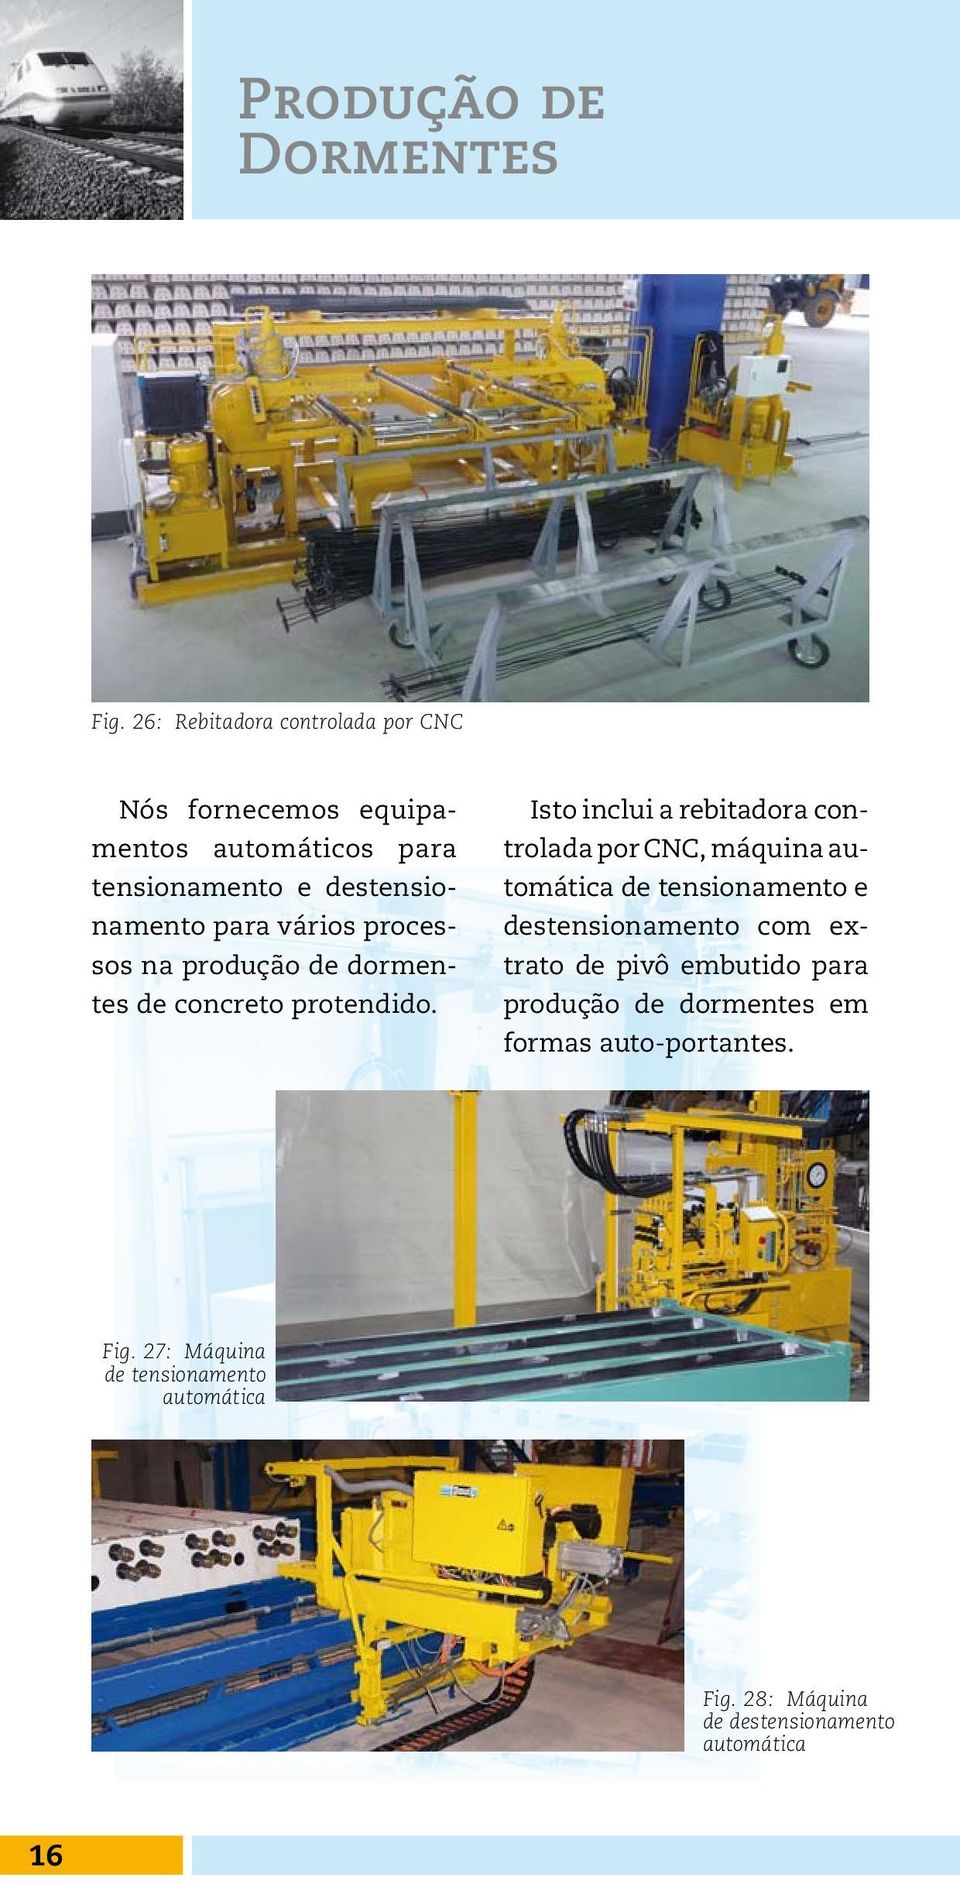 vários processos na produção de dormentes de concreto protendido.